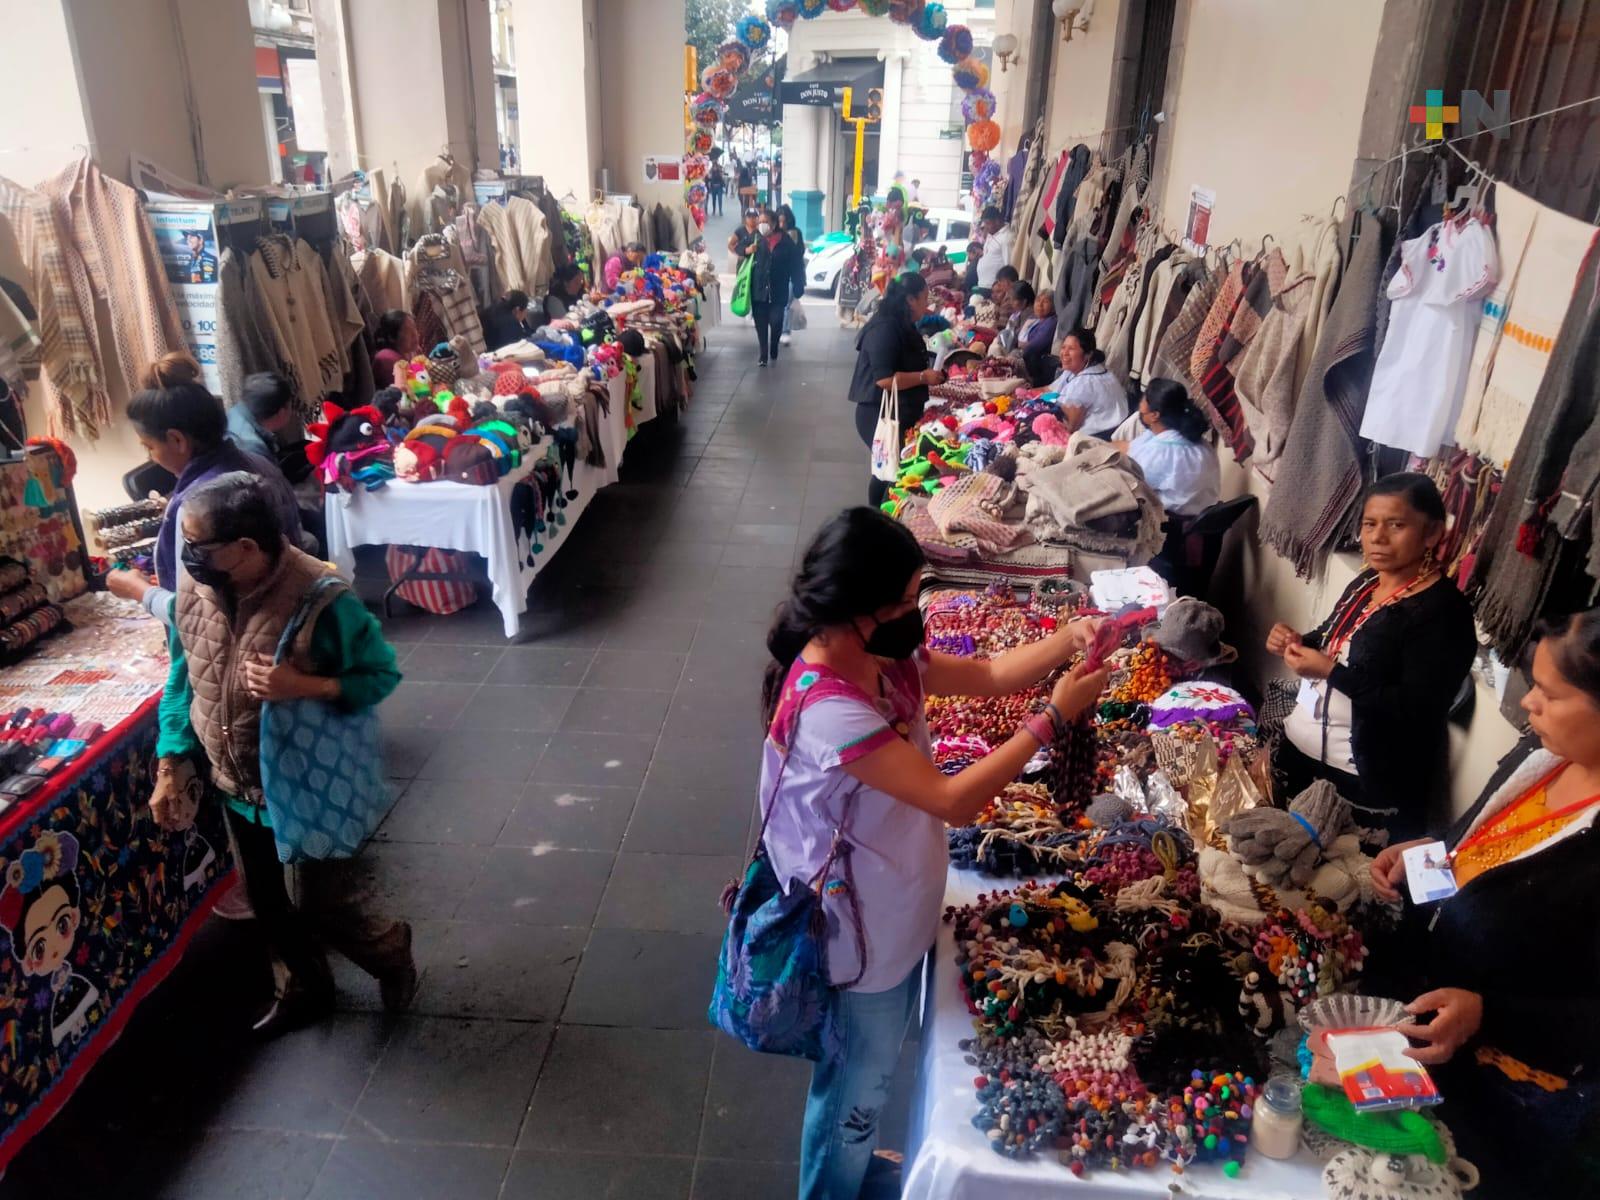 Productores de distintos municipios veracruzanos ofrecen artesanías en bajos del palacio de gobierno